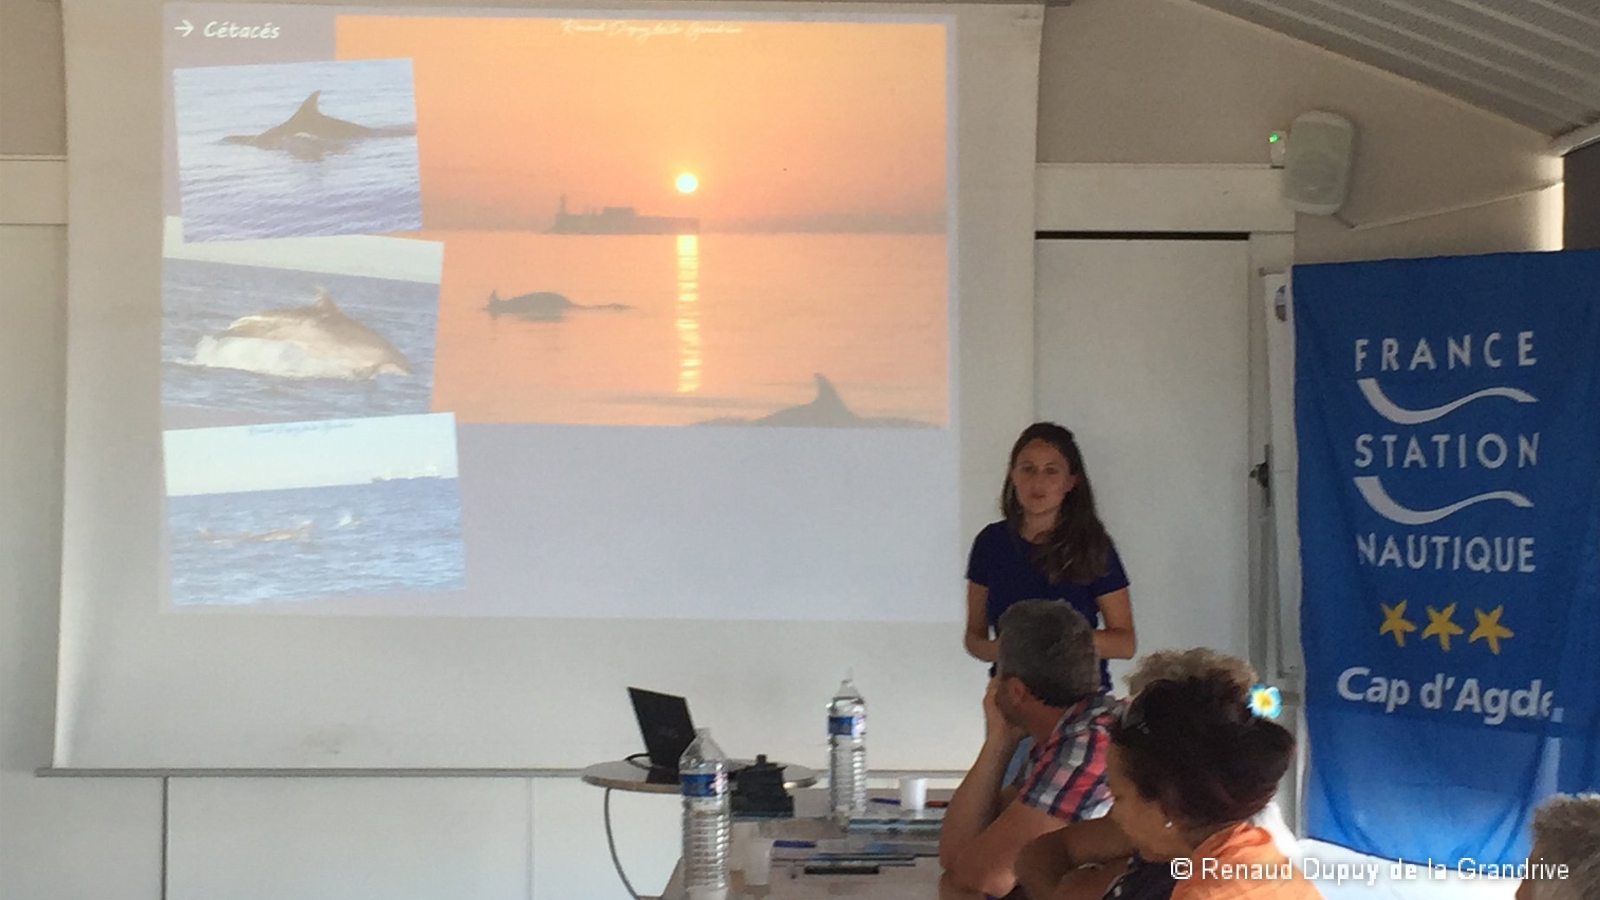 Formation des acteurs locaux du nautique et du tourisme sur l'Aire Marine Protégée